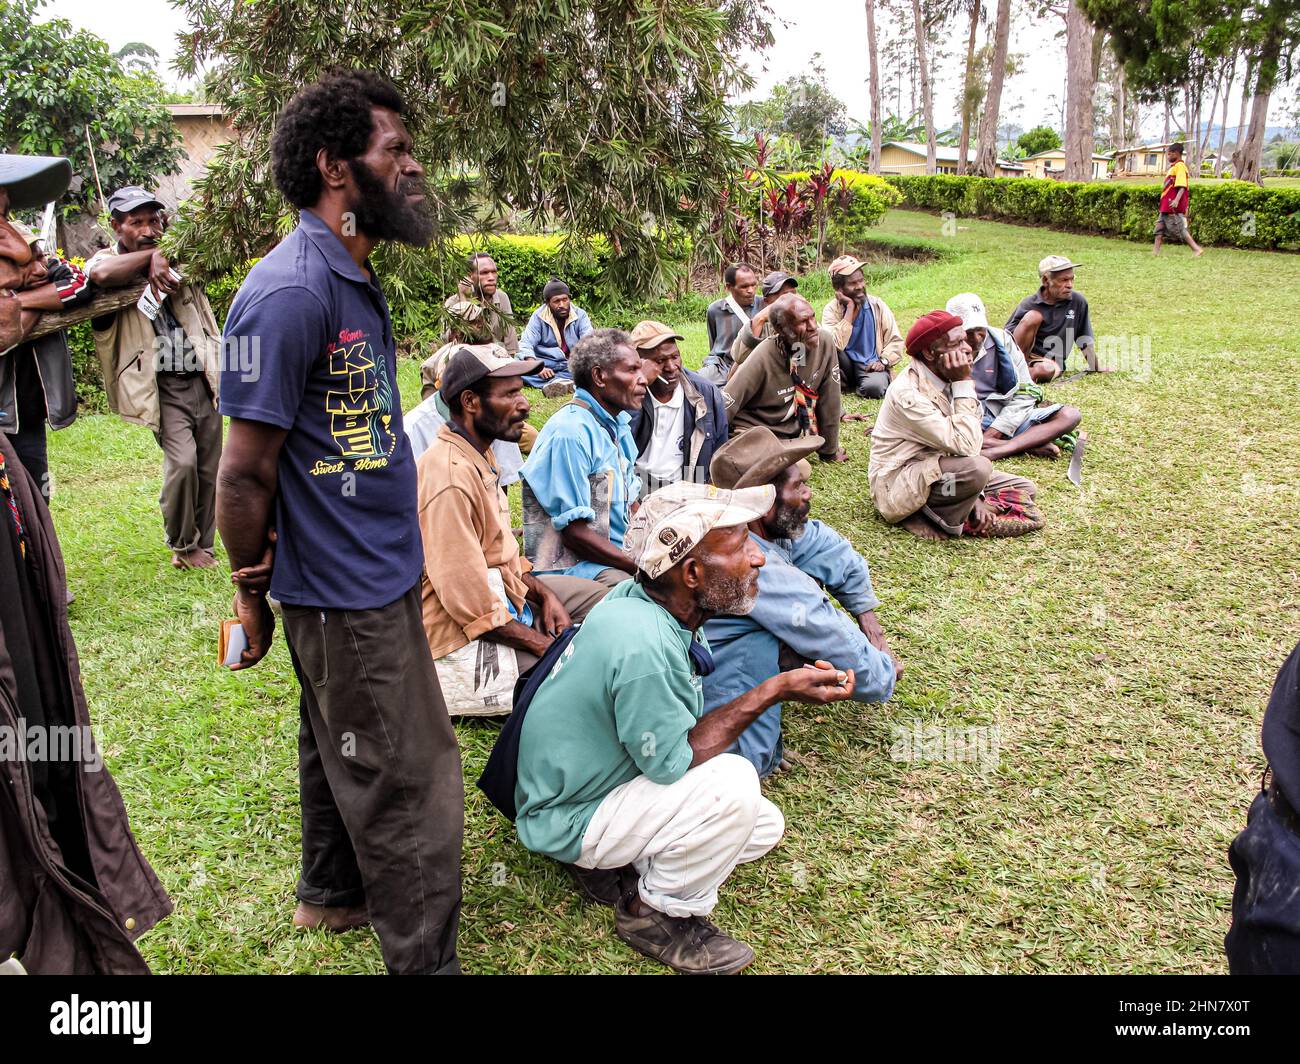 Gli anziani del Papuan seduti sull'erba durante un incontro di comunità, ascoltando attentamente l'oratore Foto Stock